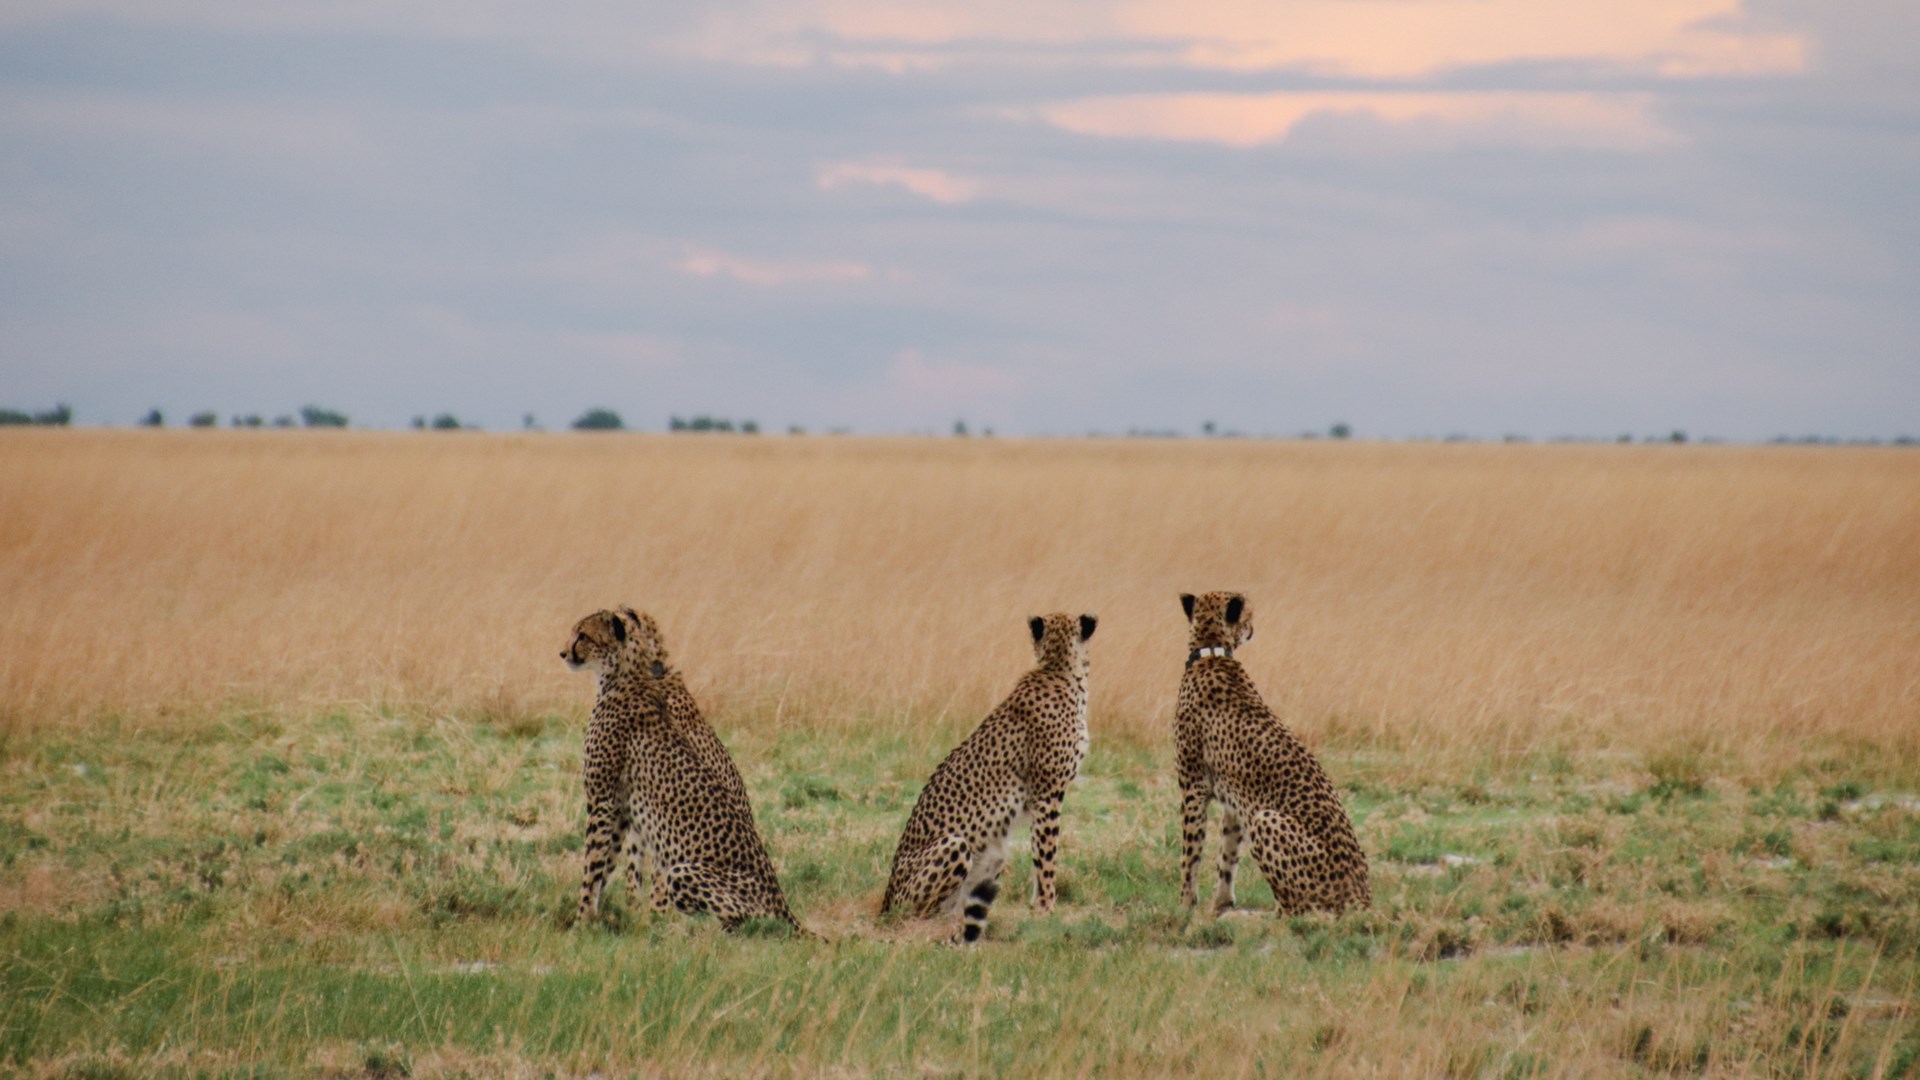 Three cheetahs watching the sunrise.